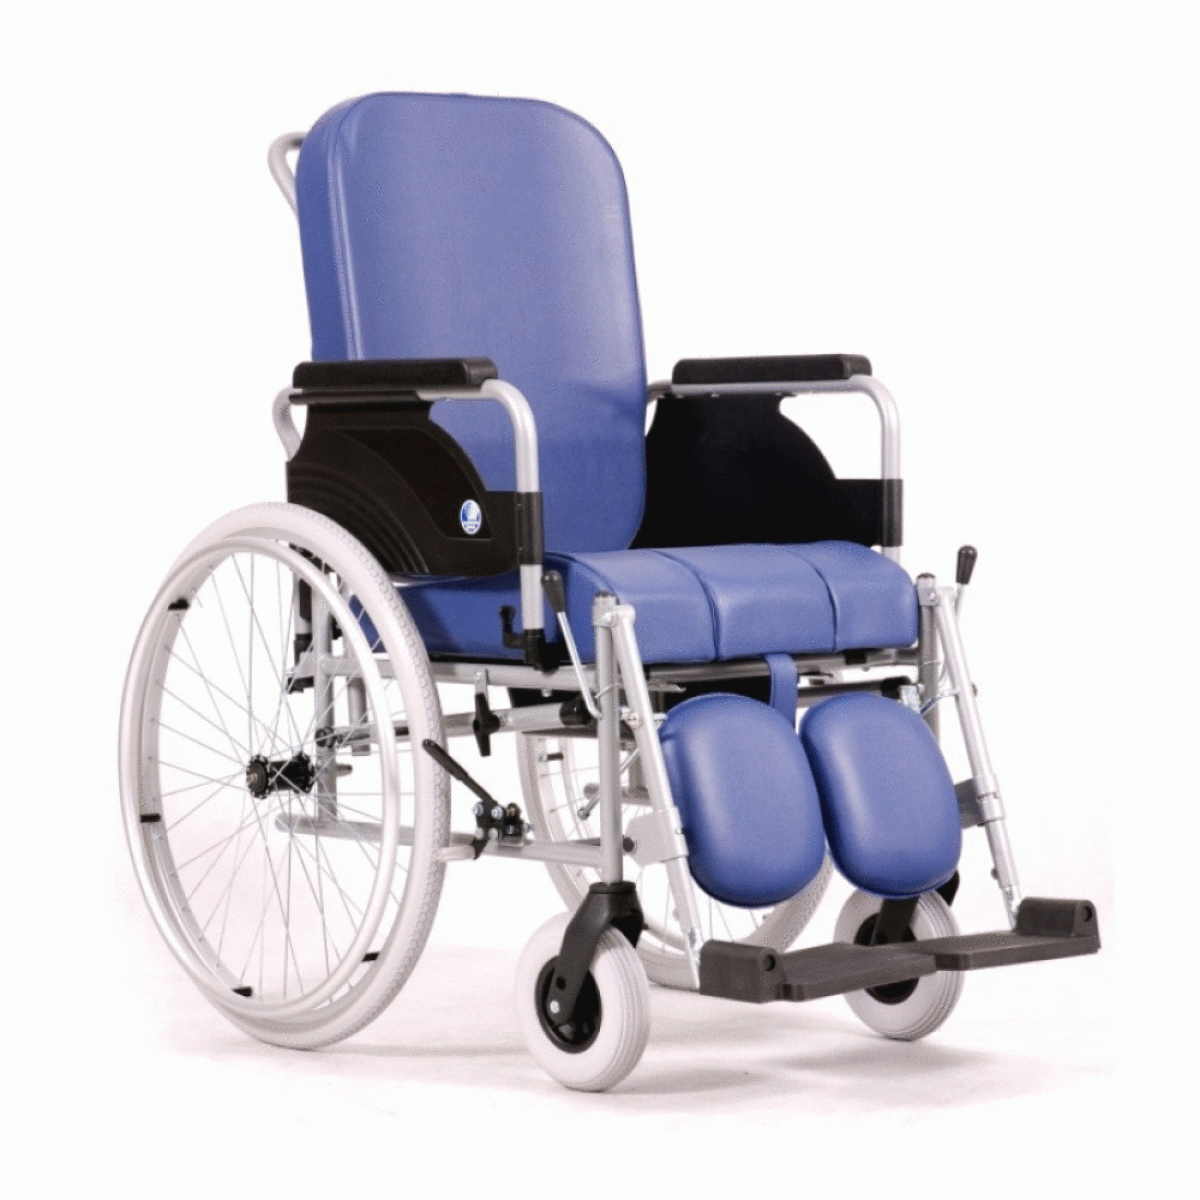 Купить сидение для инвалида. Кресло коляска Vermeiren 9300. Кресло-коляска с санитарным оснащением Vermeiren 9303. Кресло-стул с санитарным оснащением Vermeiren 9300. Кресло-коляска Barry r1.